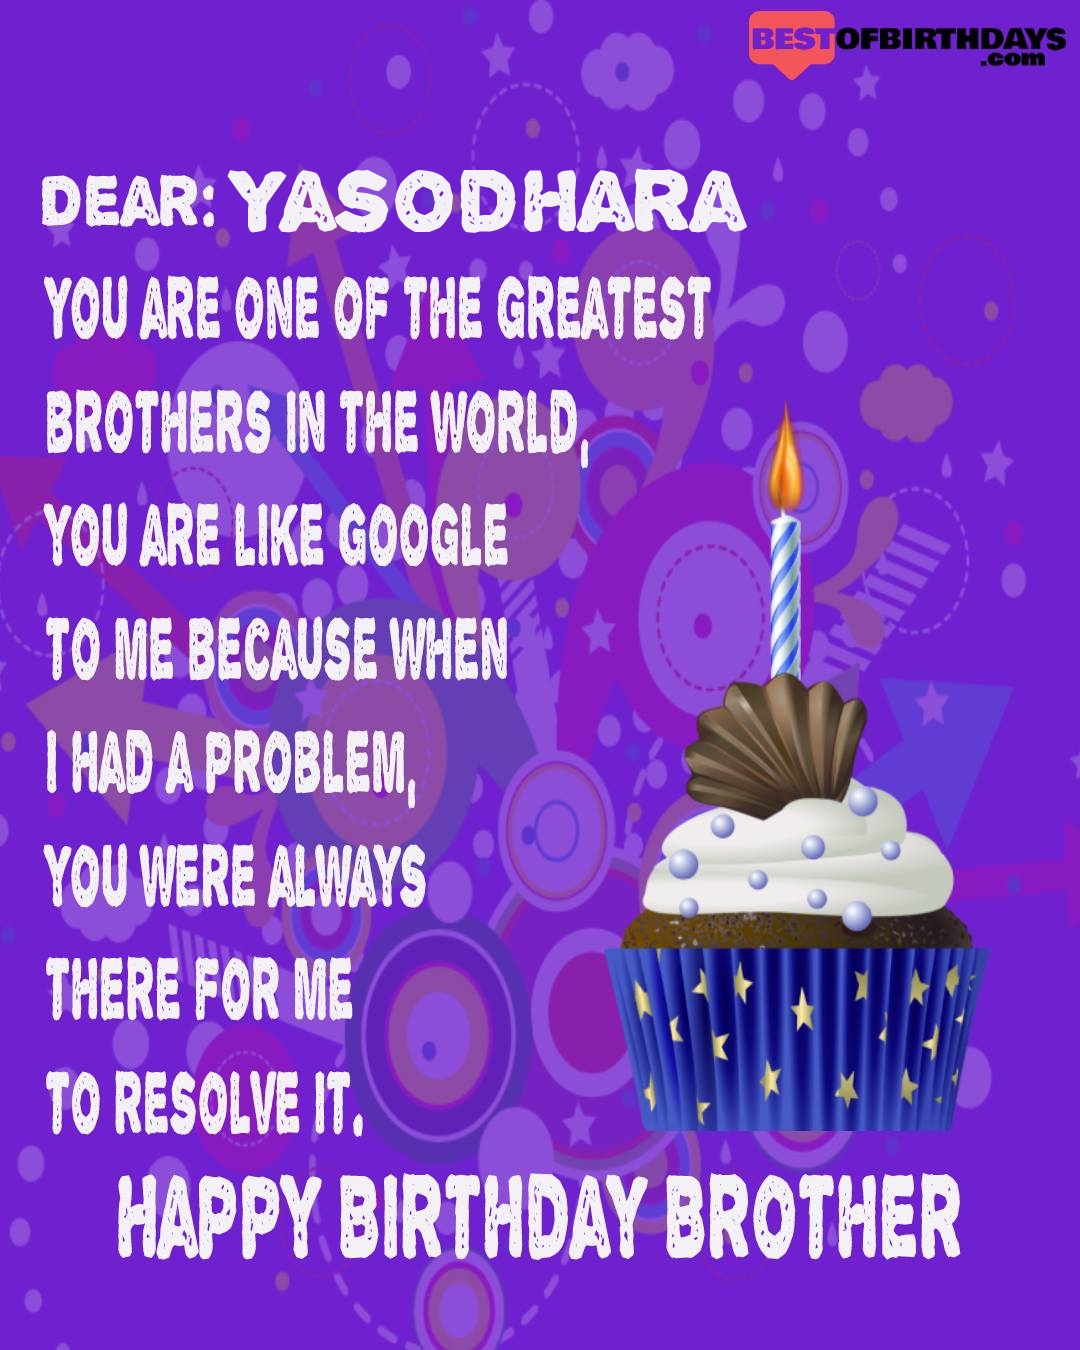 Happy birthday yasodhara bhai brother bro